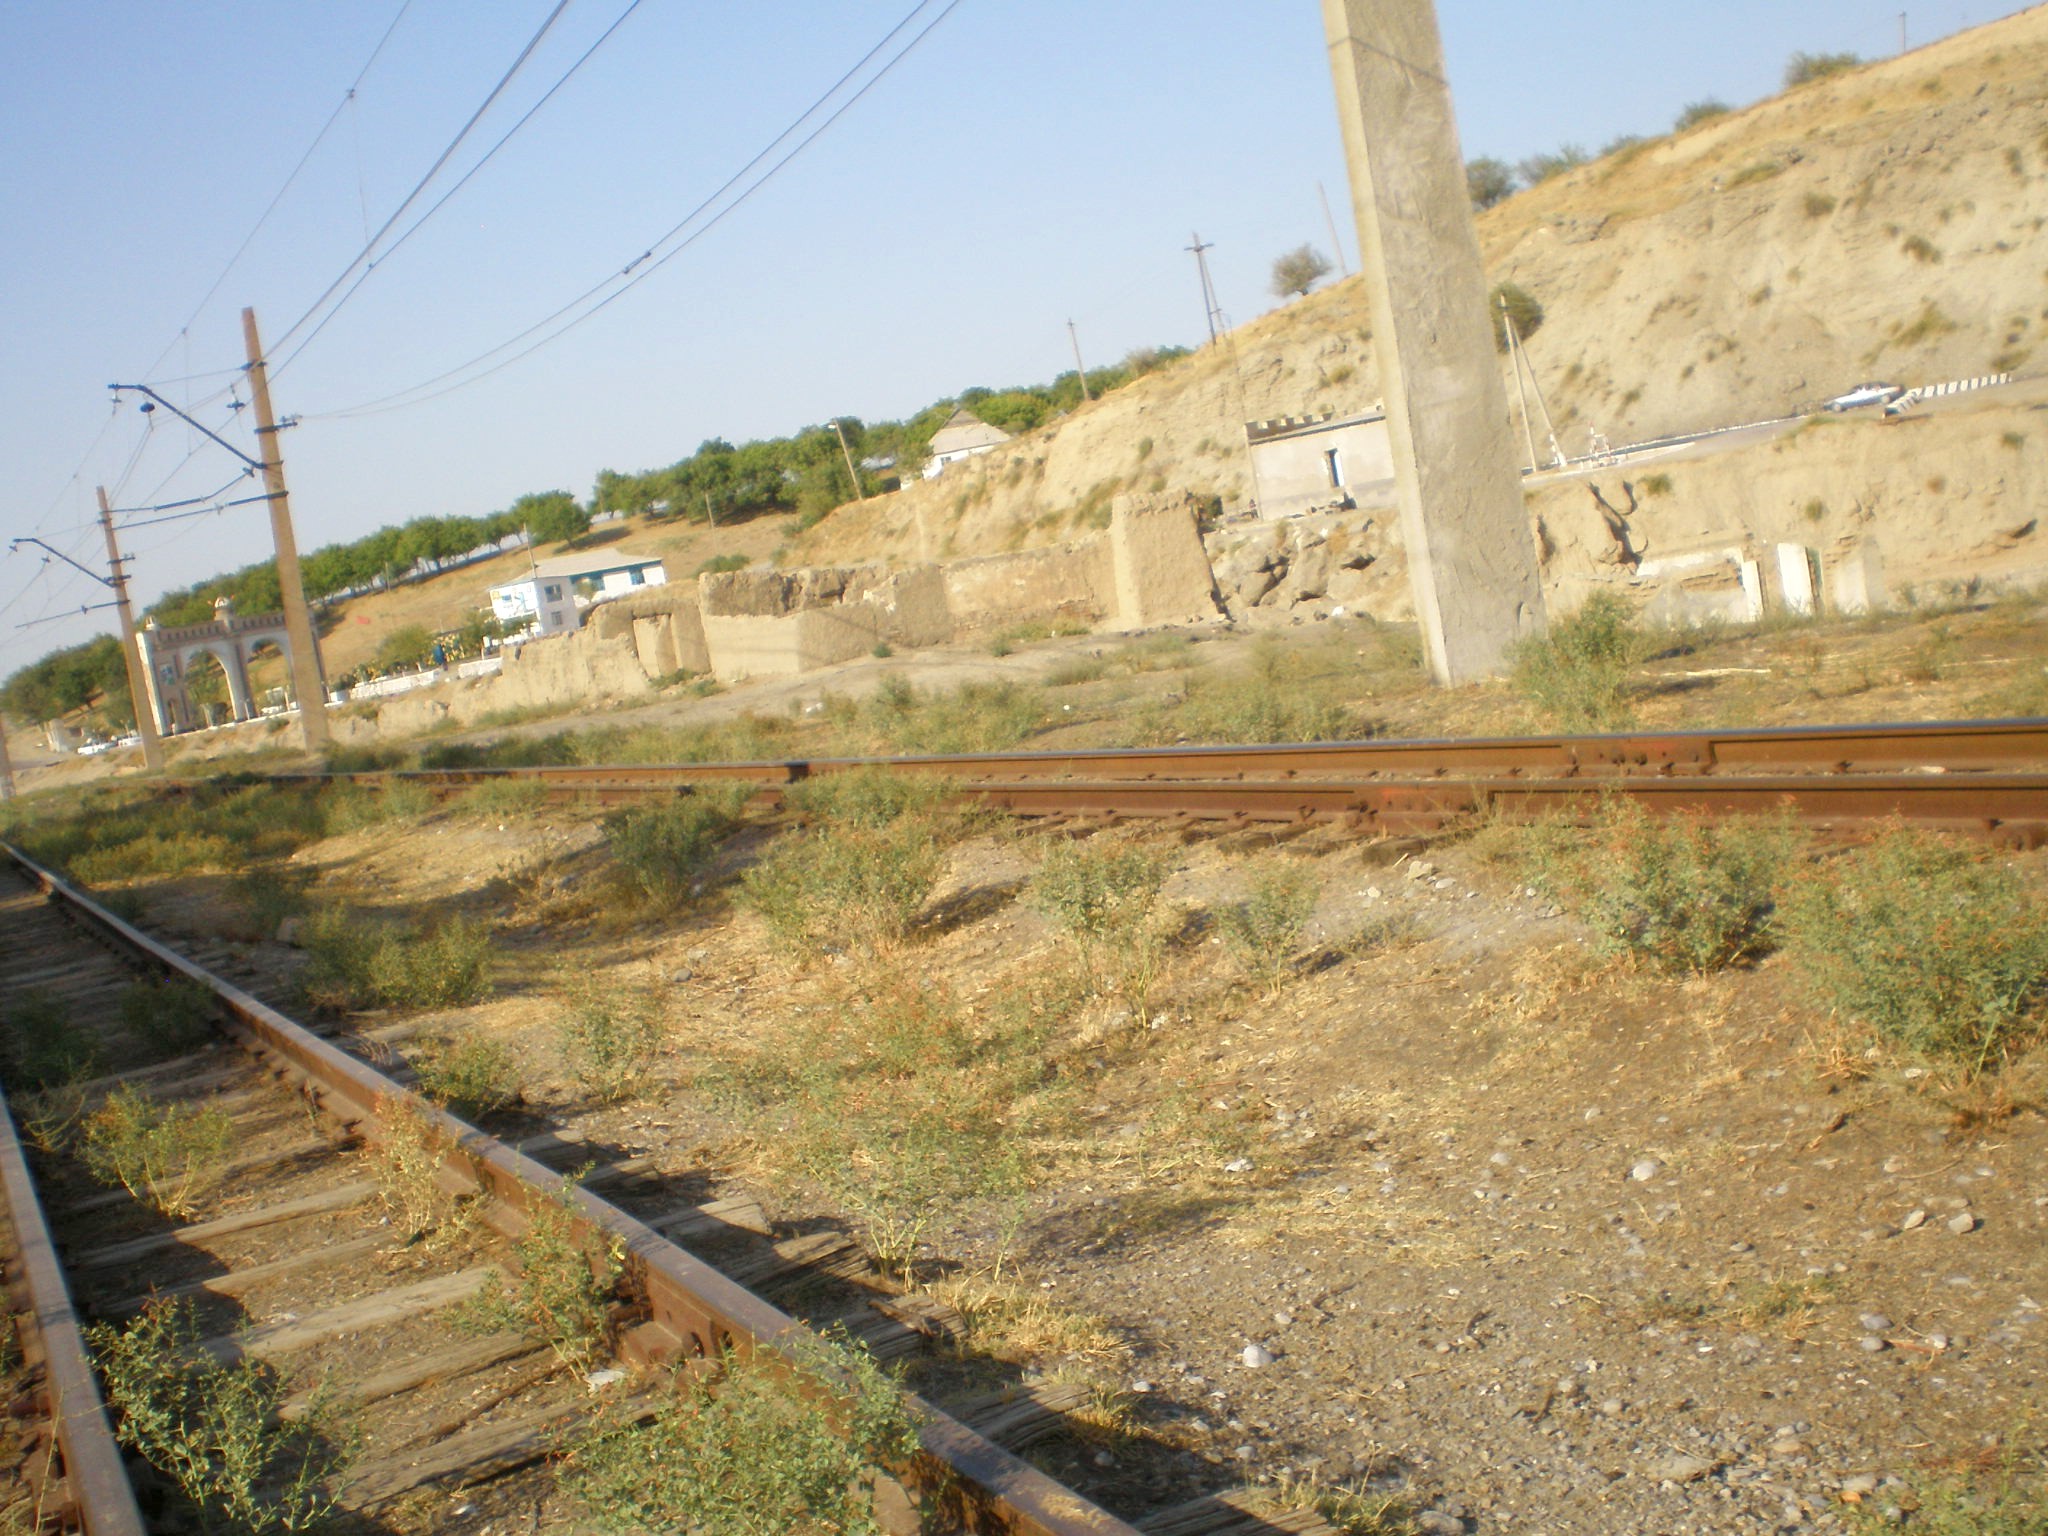 Сулюктинская узкоколейная железная дорога  —  фотографии, сделанные в 2008 году (часть 23)